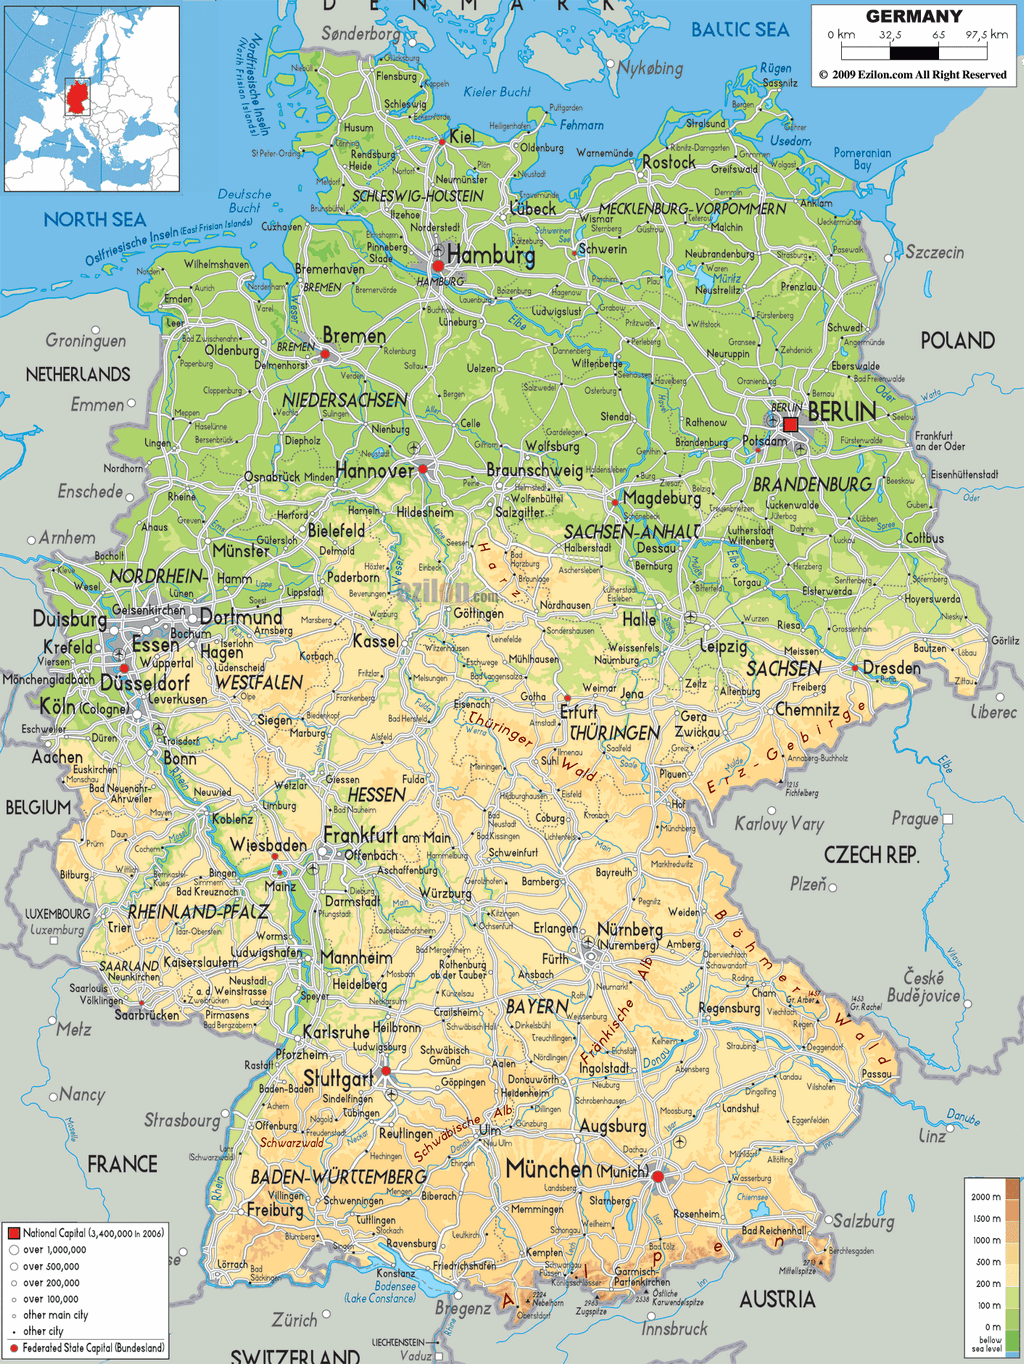 Bản đồ vật lý nước Đức